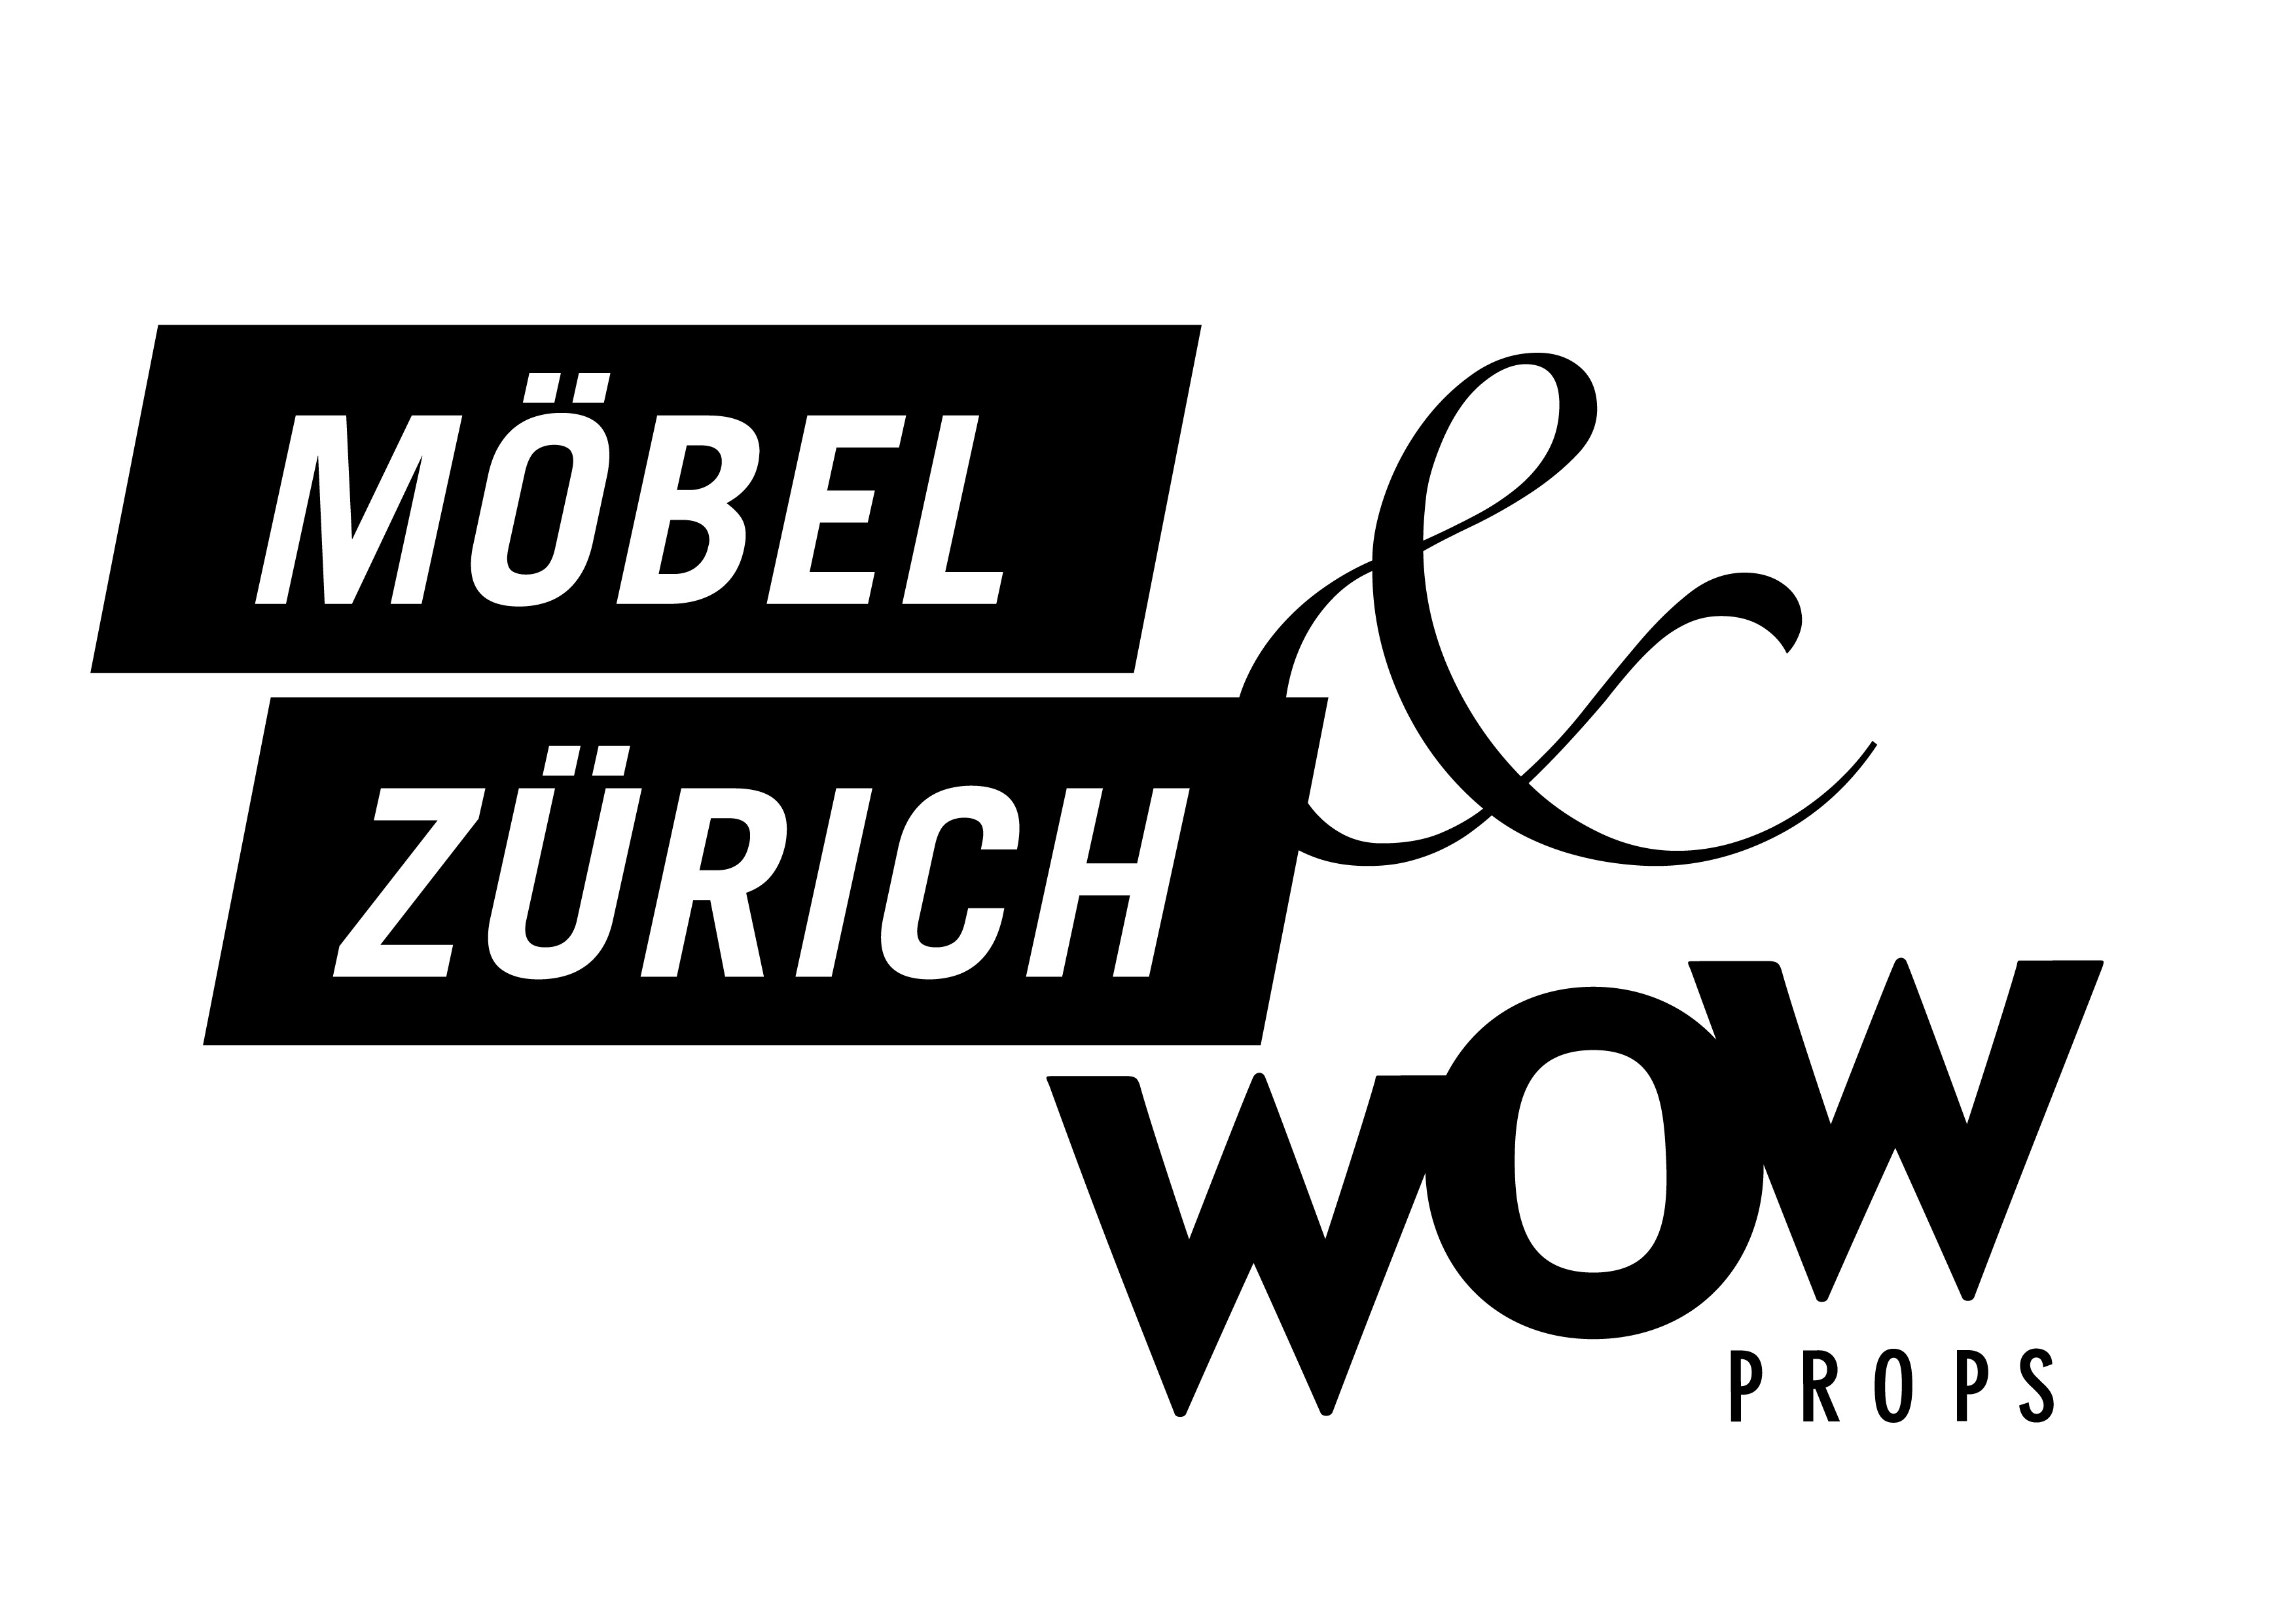 WOW Props & Möbel Zürich